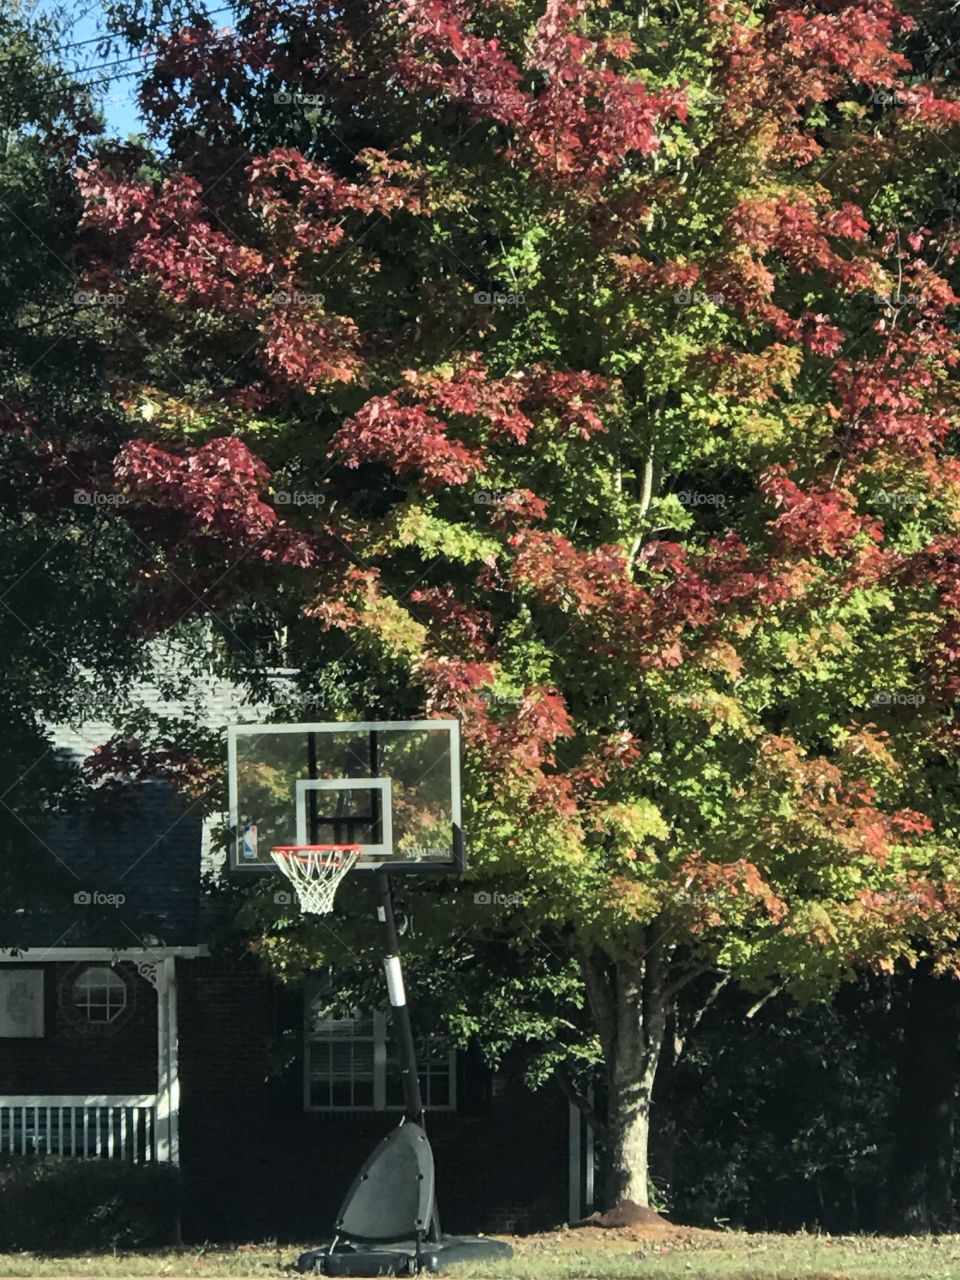 Basketball fall 